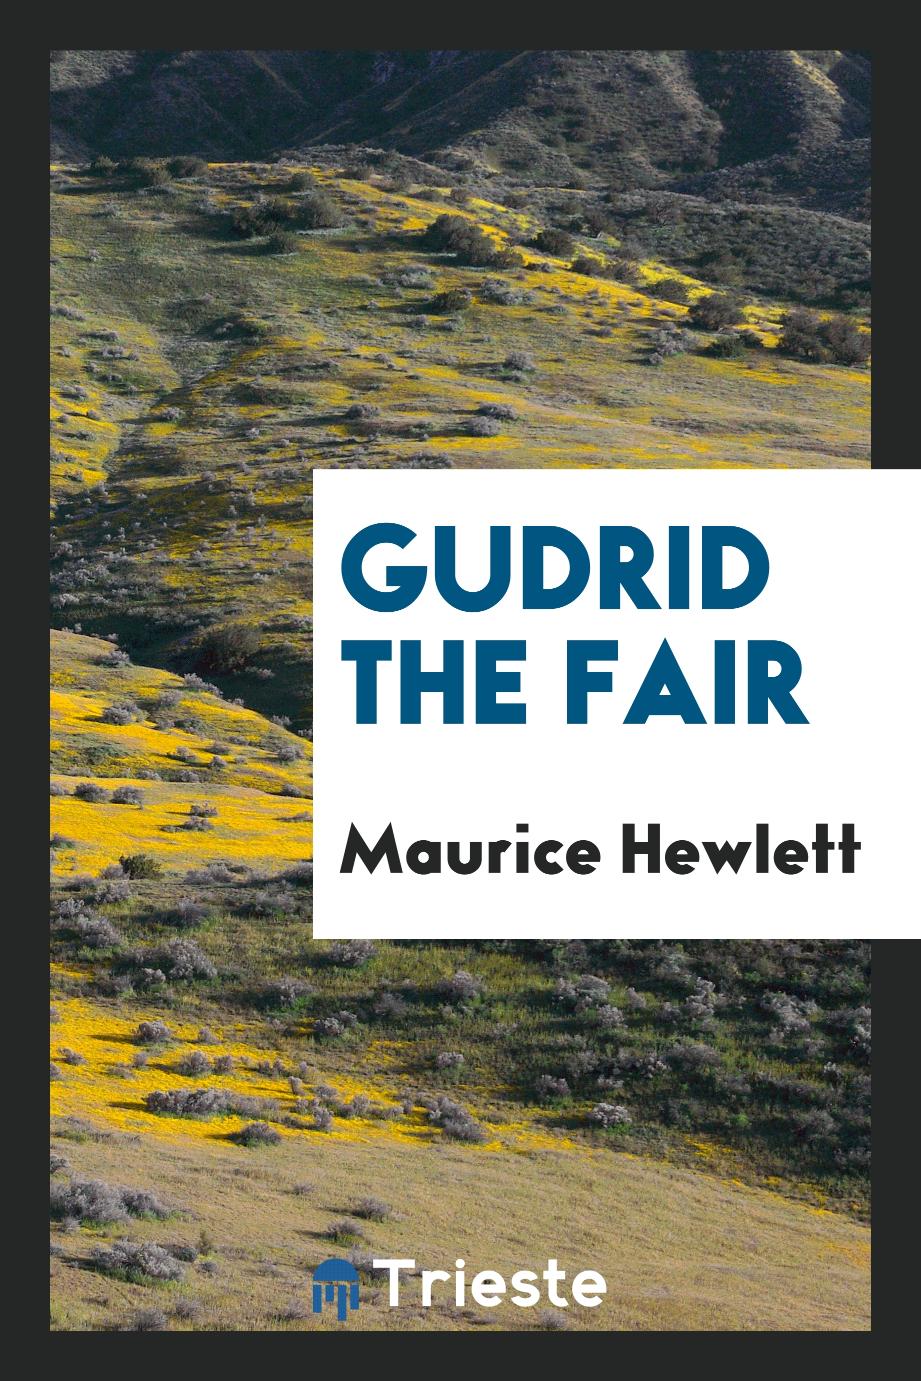 Maurice Hewlett - Gudrid the Fair